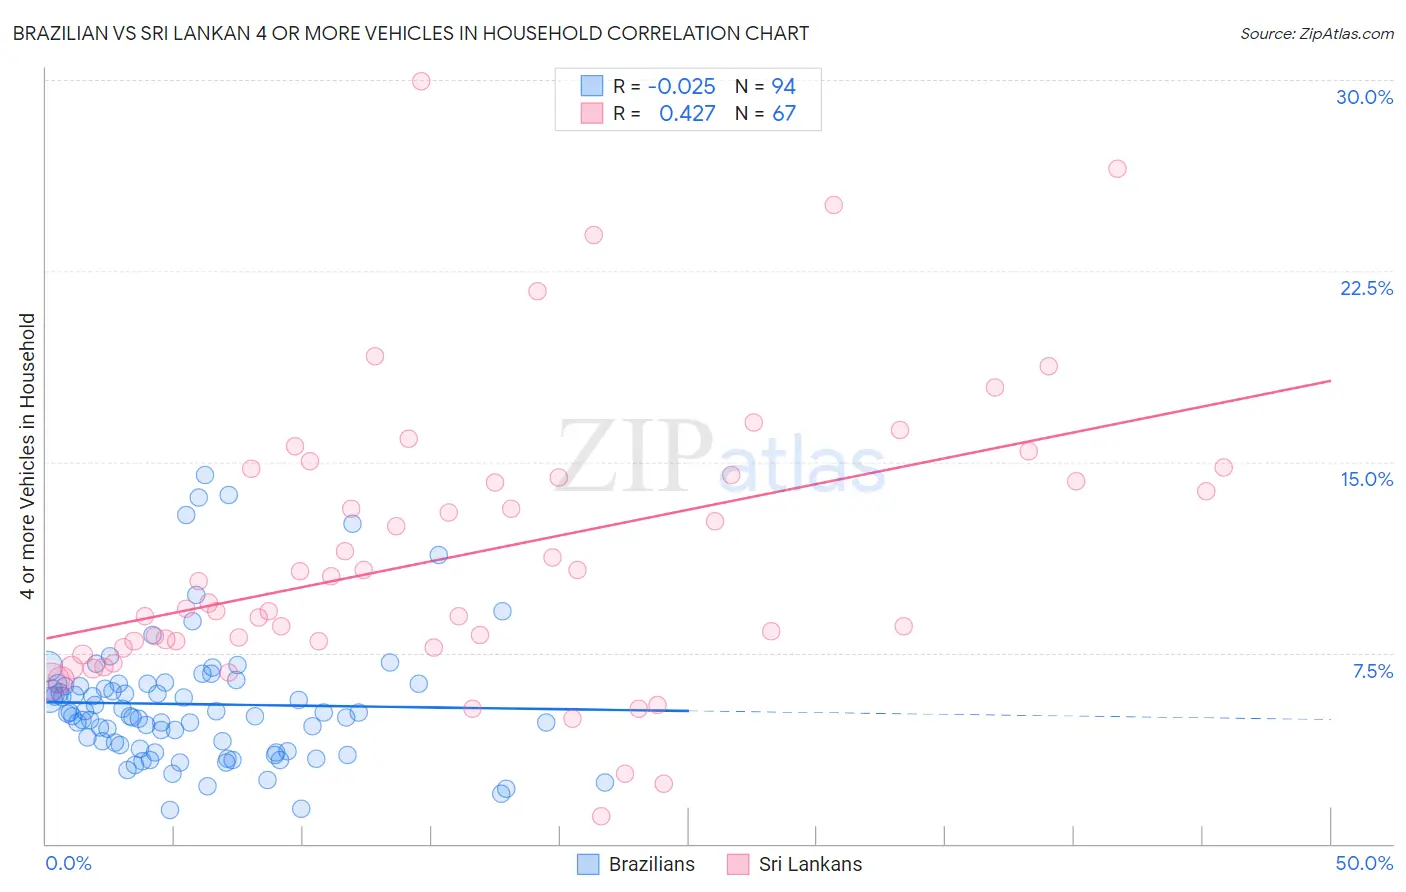 Brazilian vs Sri Lankan 4 or more Vehicles in Household